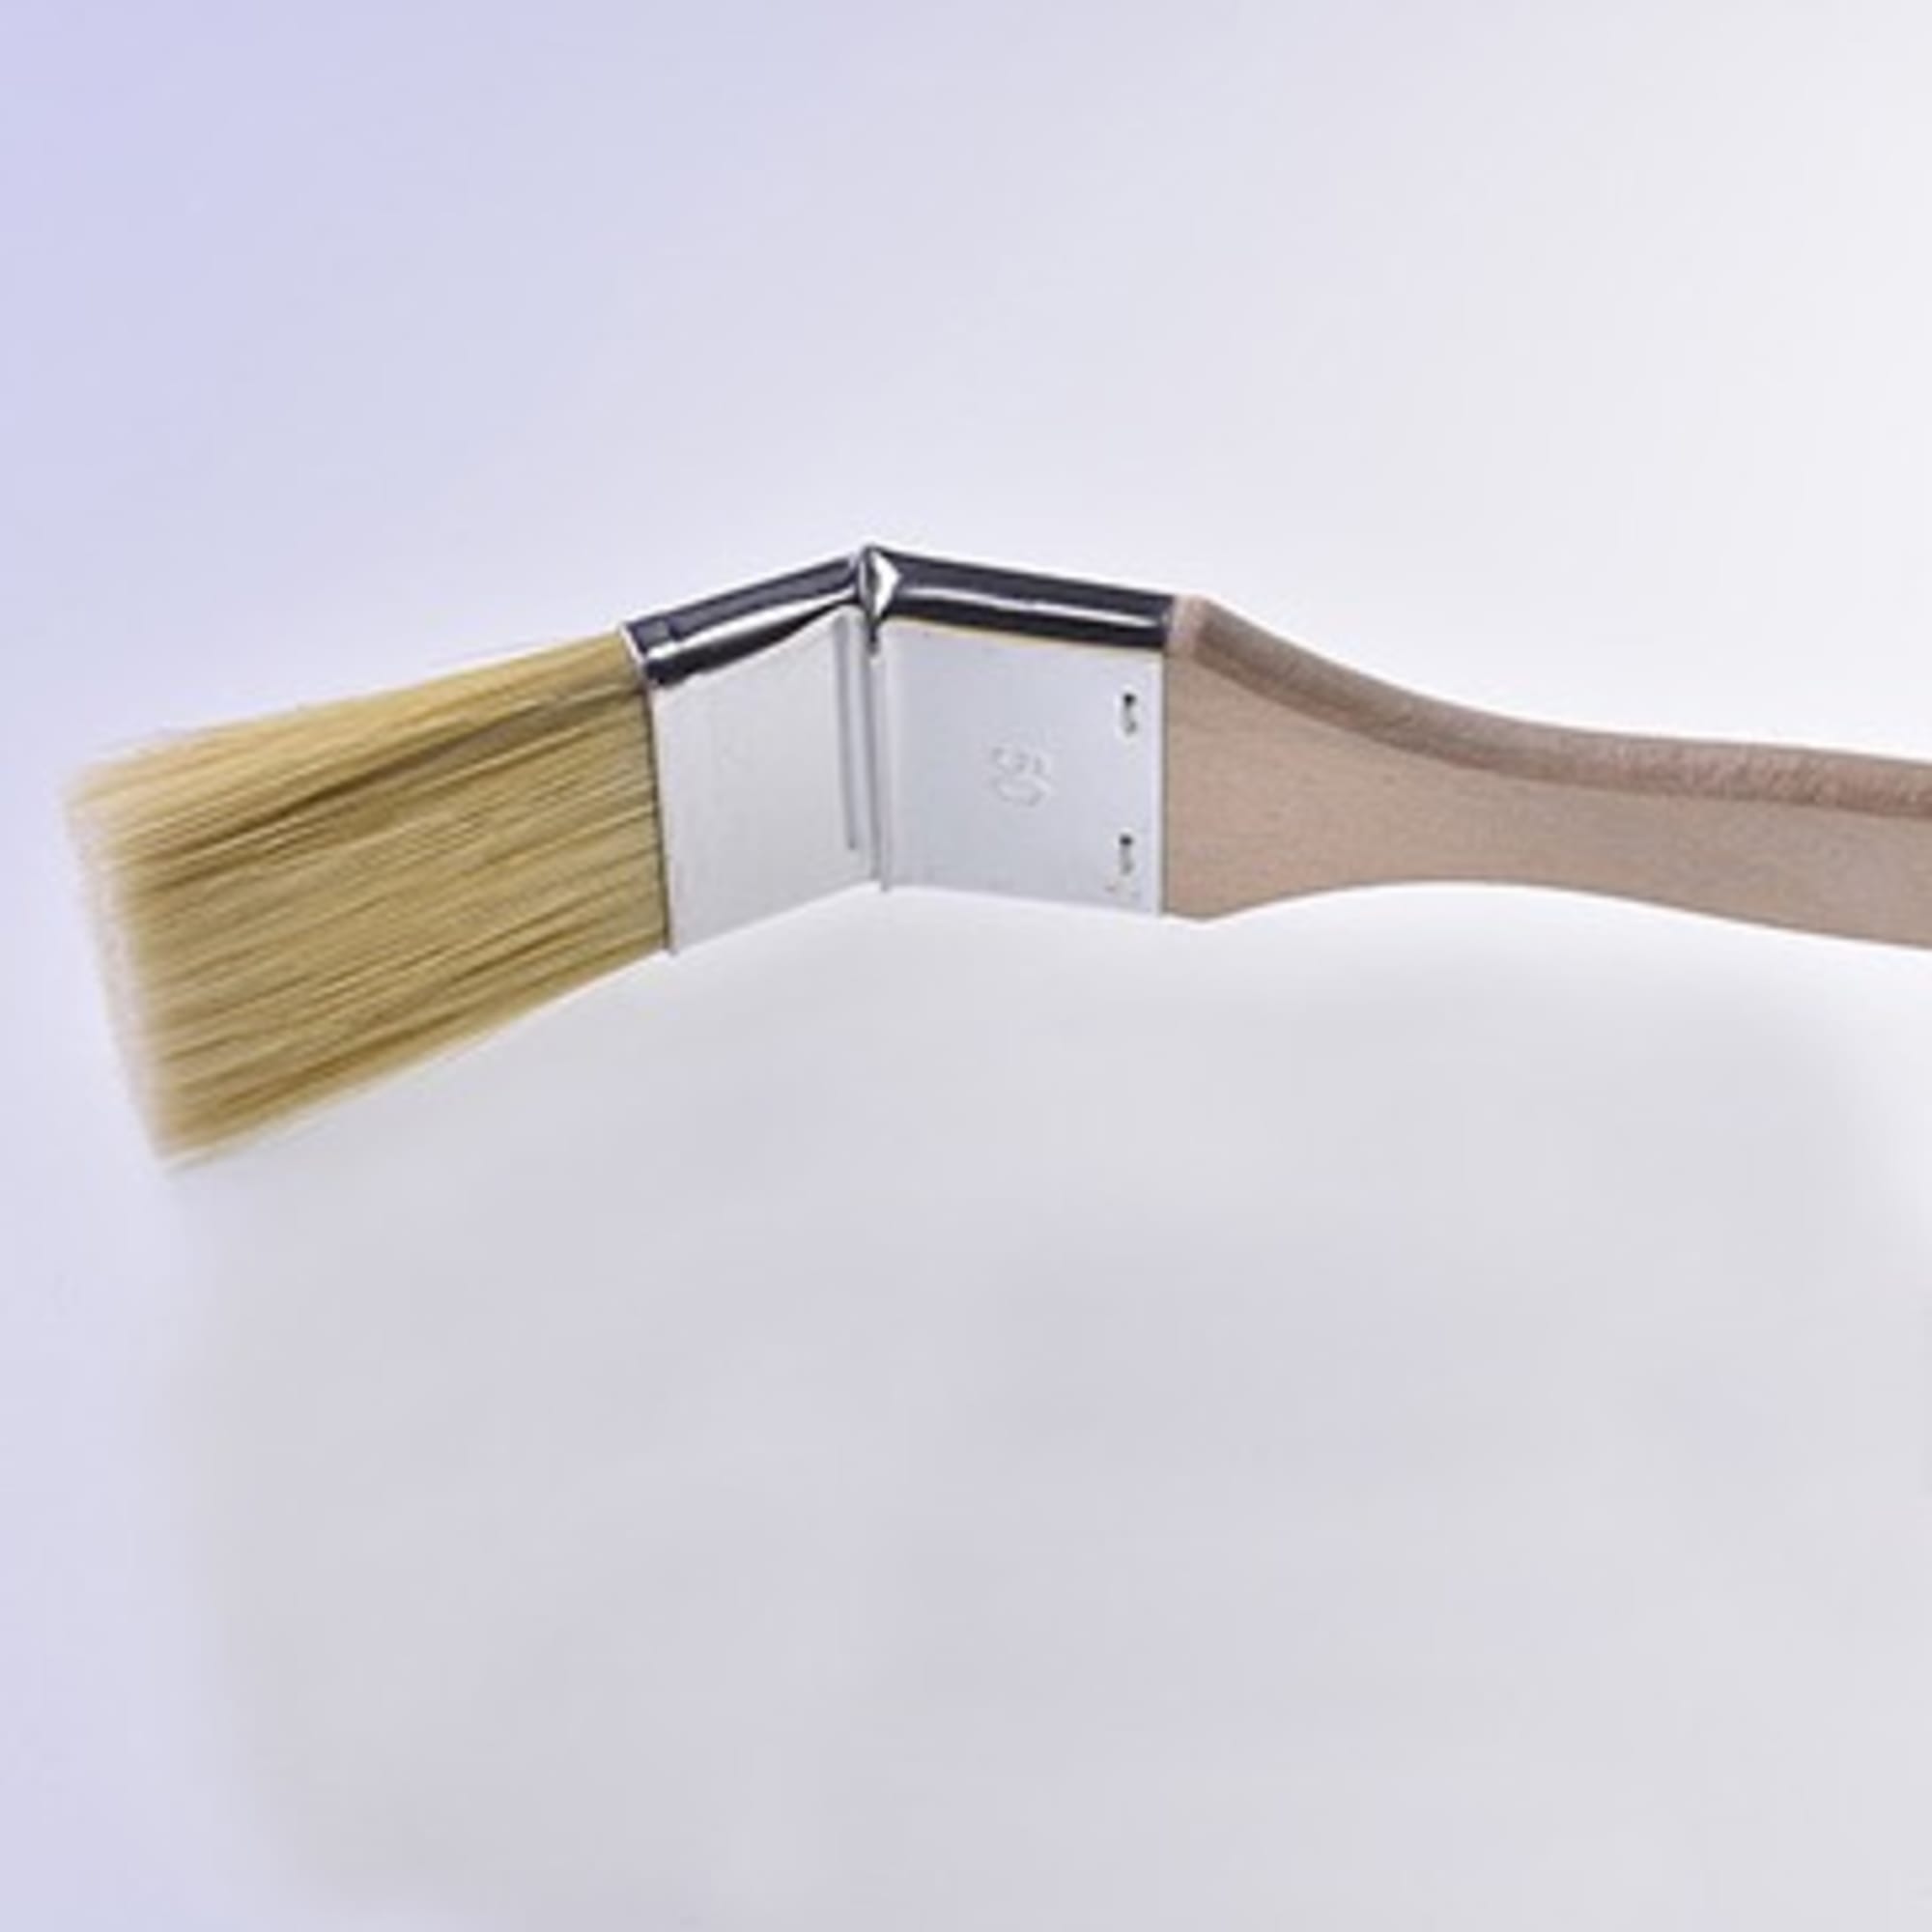 Eckenpinsel (Heizkörperpinsel), 50 mm - Premiumqualität für Harze, Bild 2